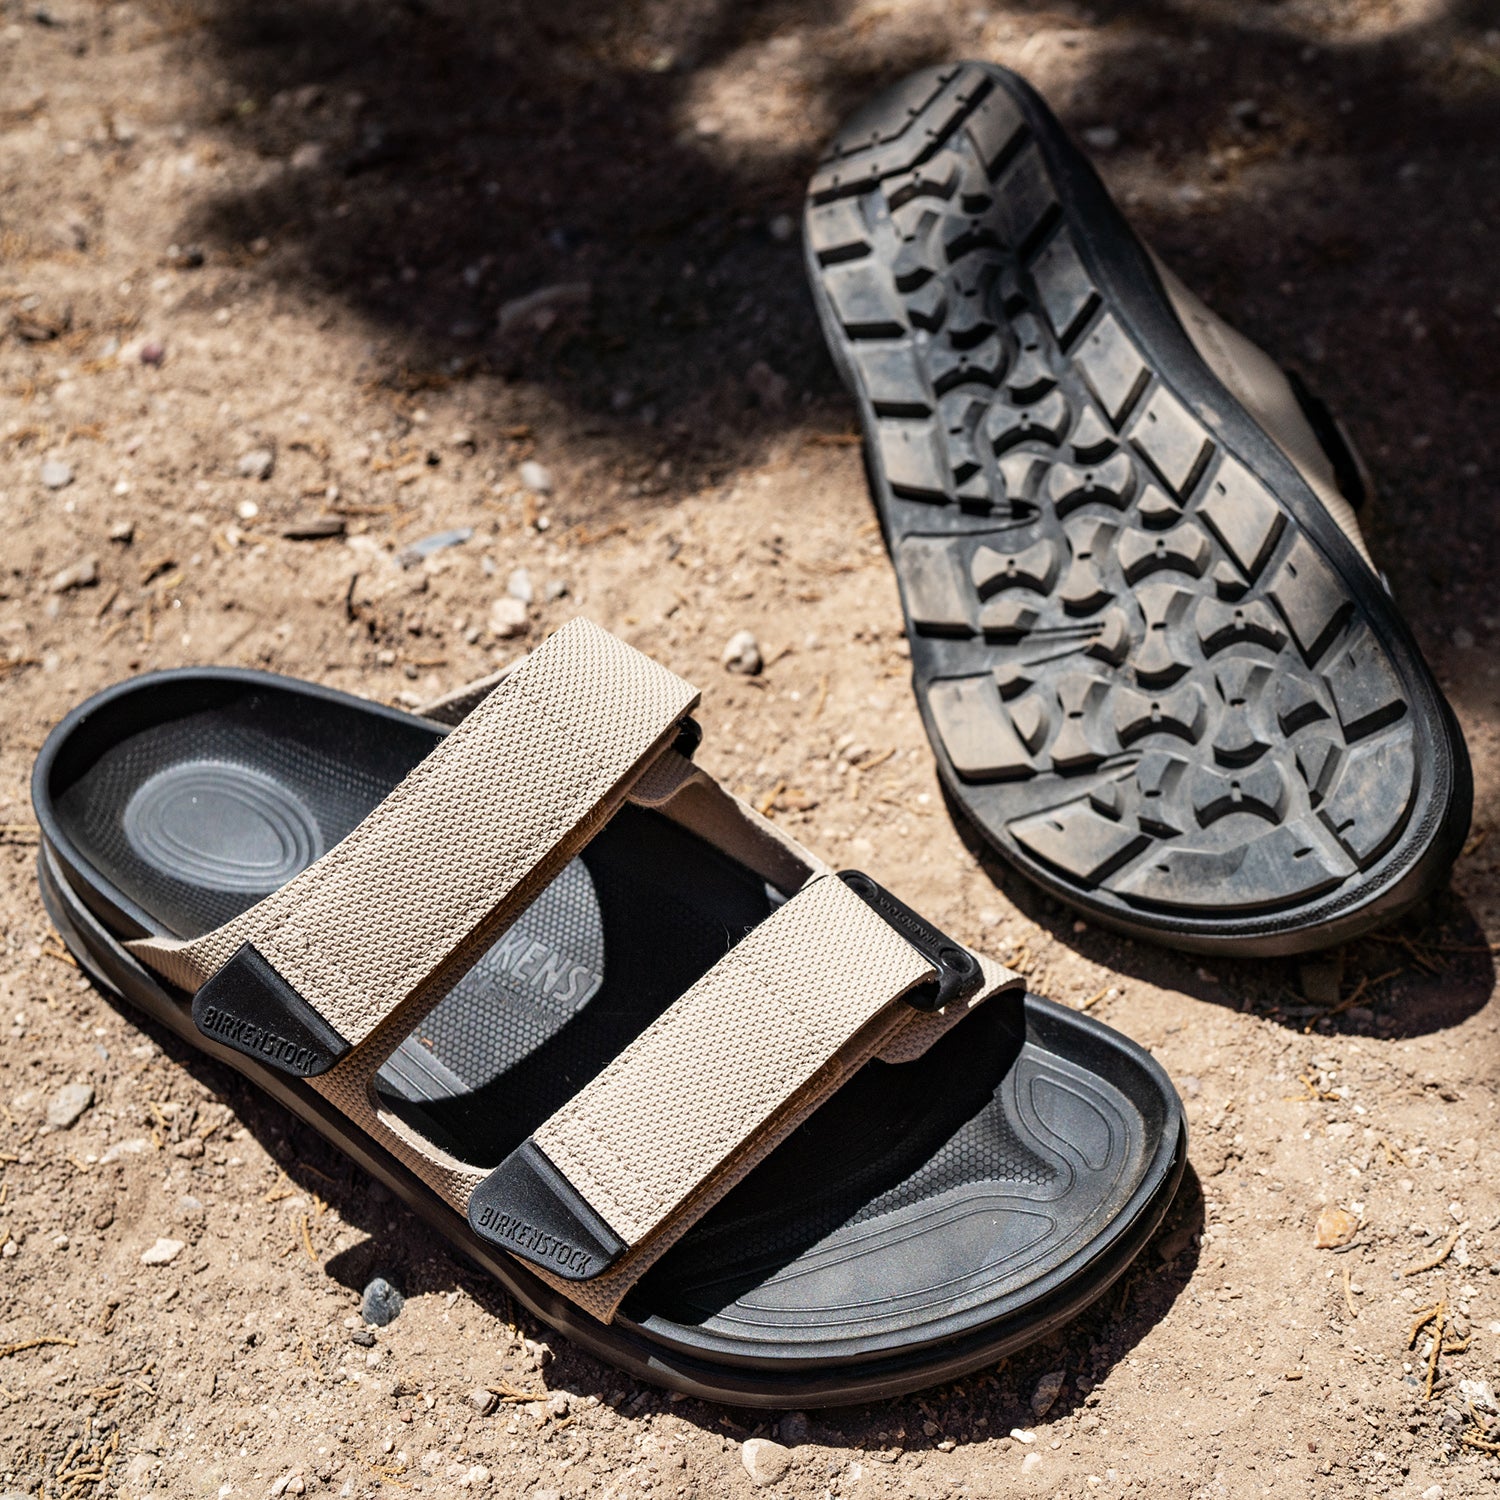 Buy Birkenstock Men's Arizona Slide Sandals,Brown,43 EU (10-10.5 N US Men /  12-12.5 N US Women) at Amazon.in